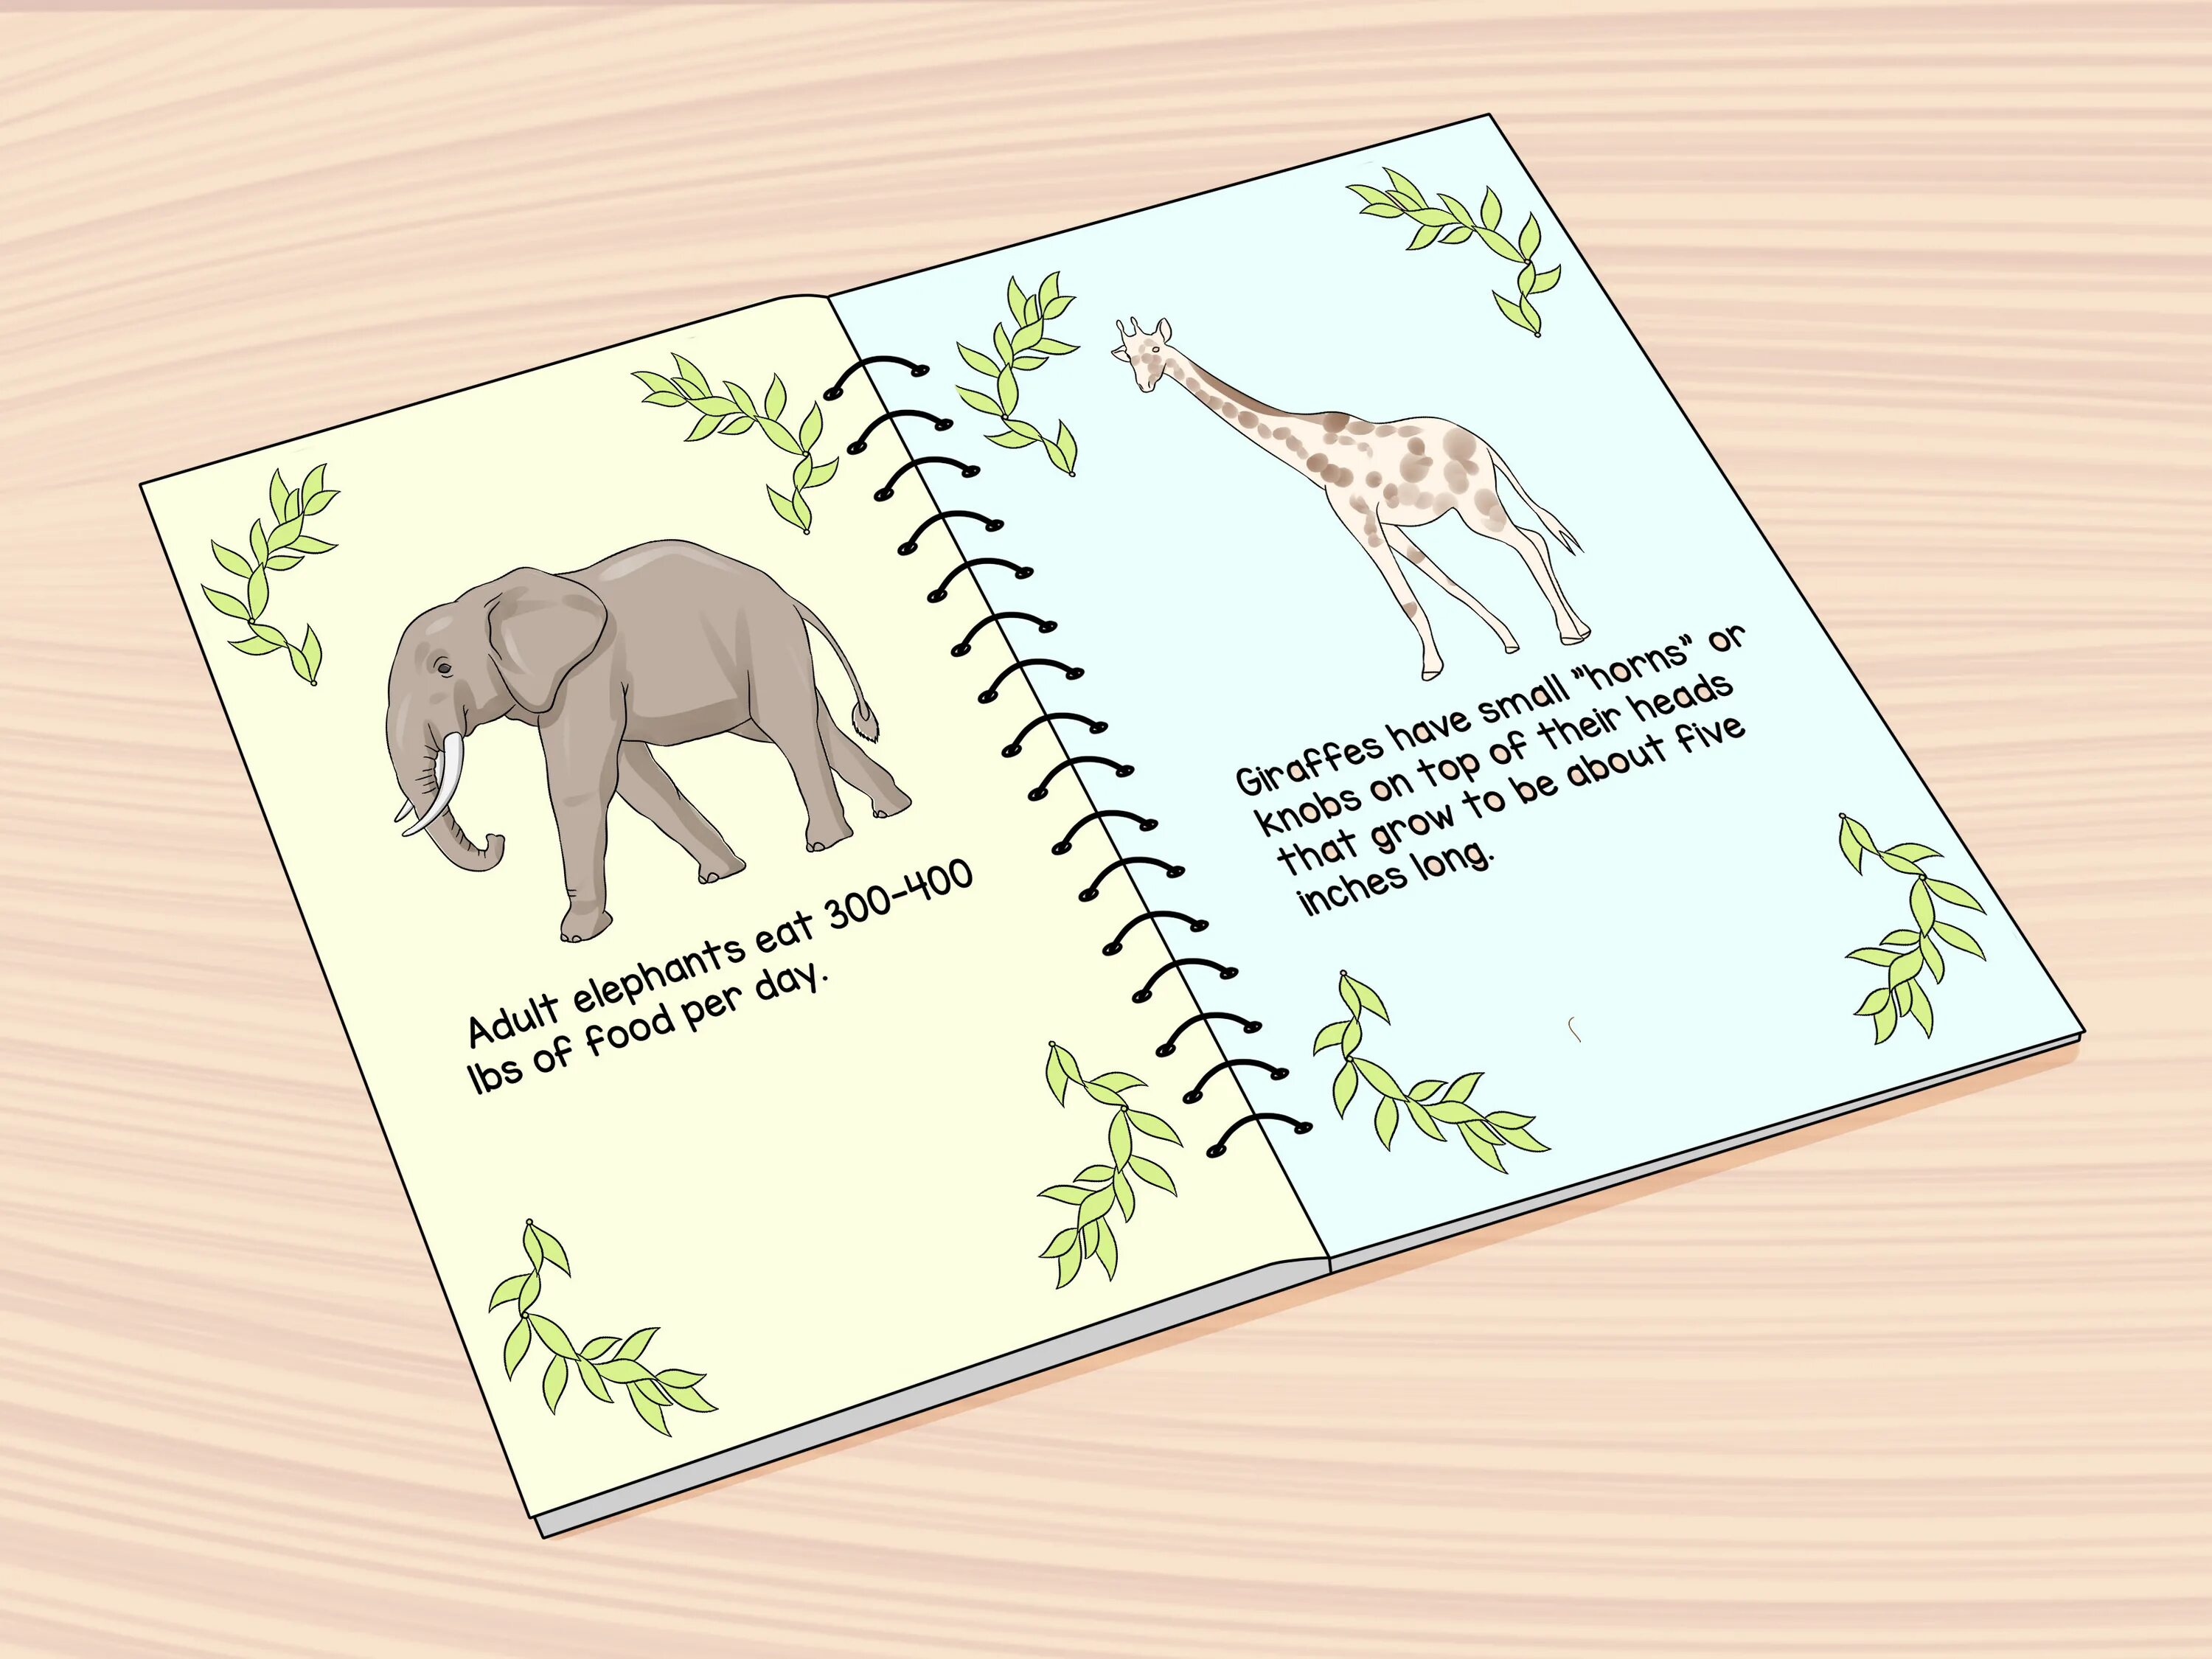 Book about animals. Животные в картинках для детей для обложки книги. Сделать из книг животных. Книжки фактов. Книга animals animals